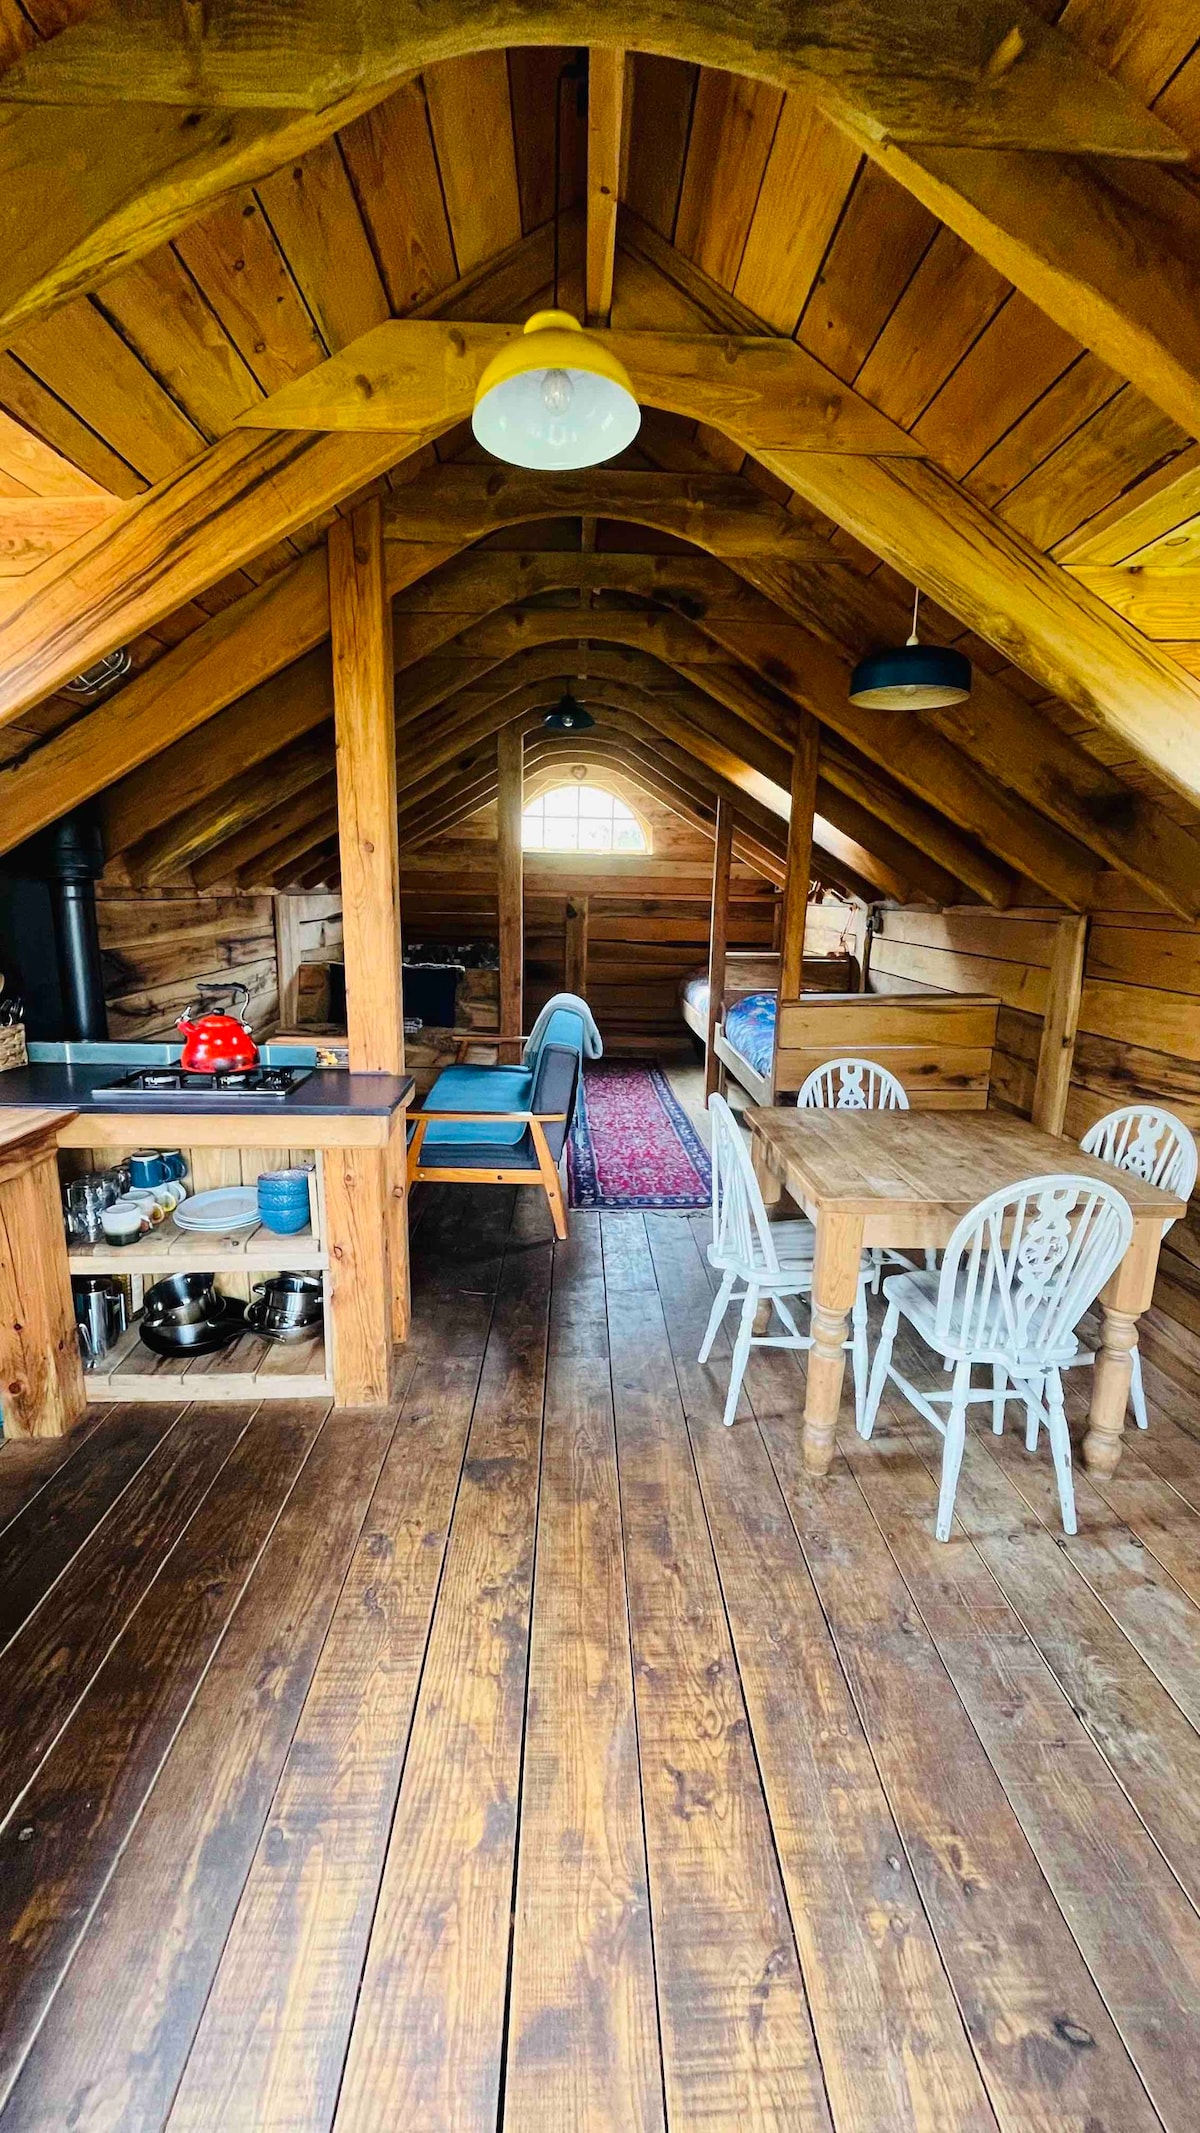 Viking Longhouse/Underground Hobbit Tiny house